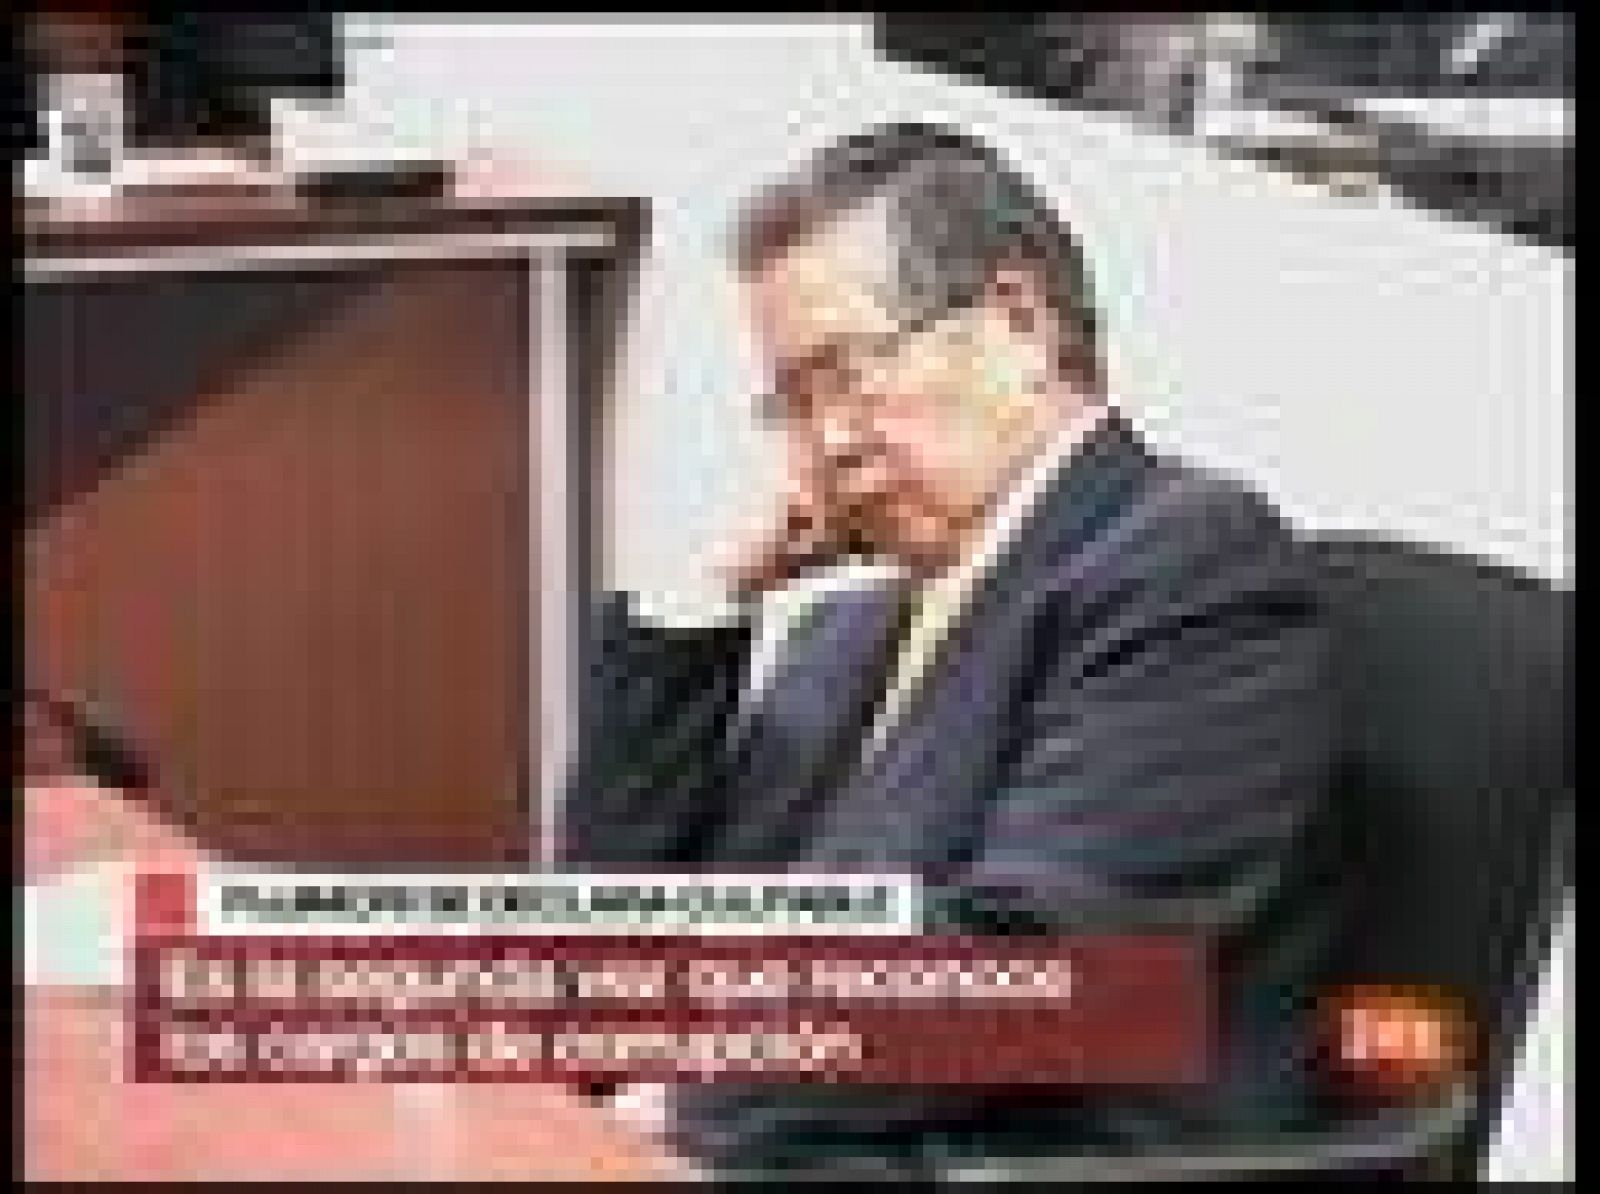  El ex presidente peruano Alberto Fujimori ha aceptado su responsibilidad en el espionaje, soborno de congresistas y compra ilegal de un medio de comunicación en los años 90. "Estoy conforme" ha respondido el ex mandatario tras escuchar la acusación del tribunal. 